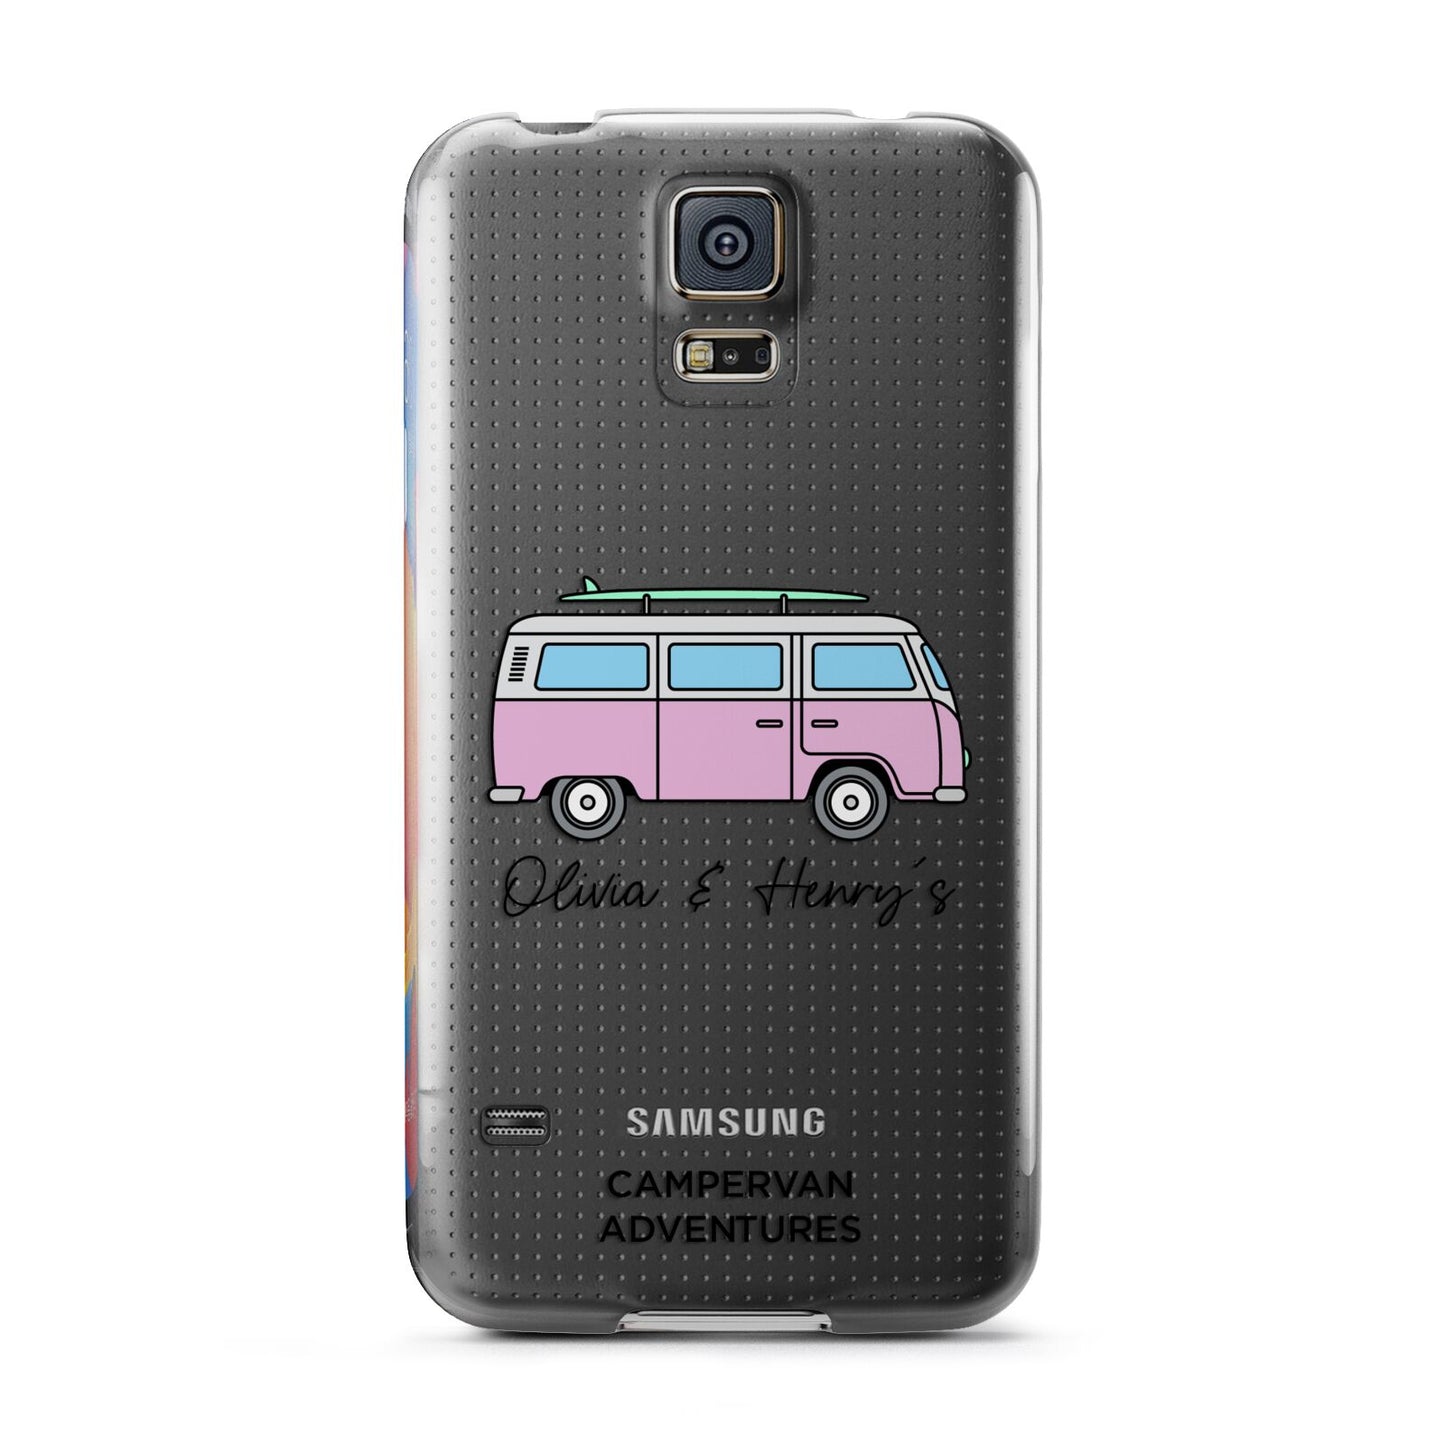 Personalised Campervan Adventures Samsung Galaxy S5 Case